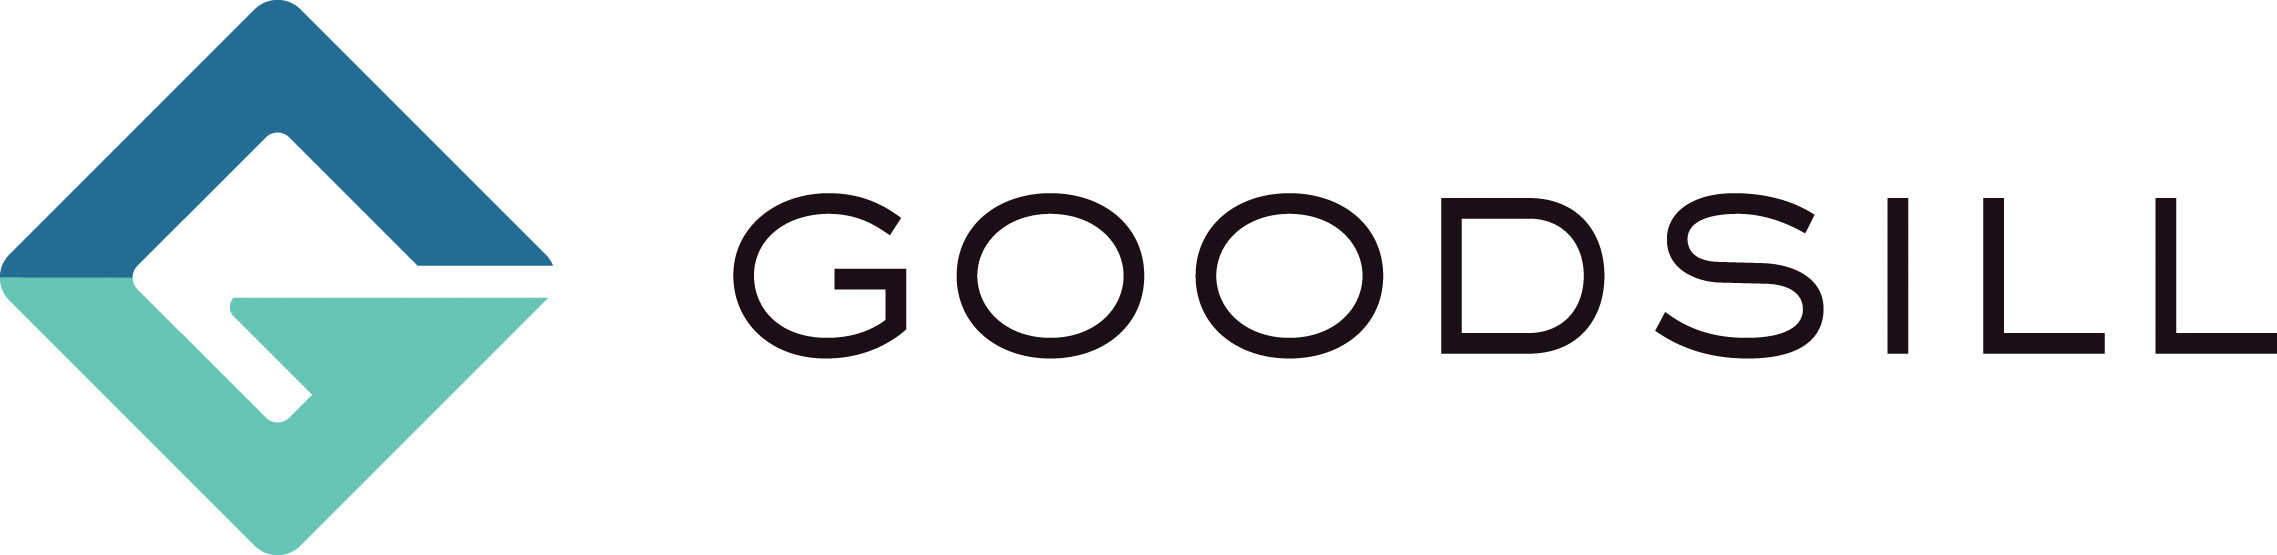 Goodsill logo